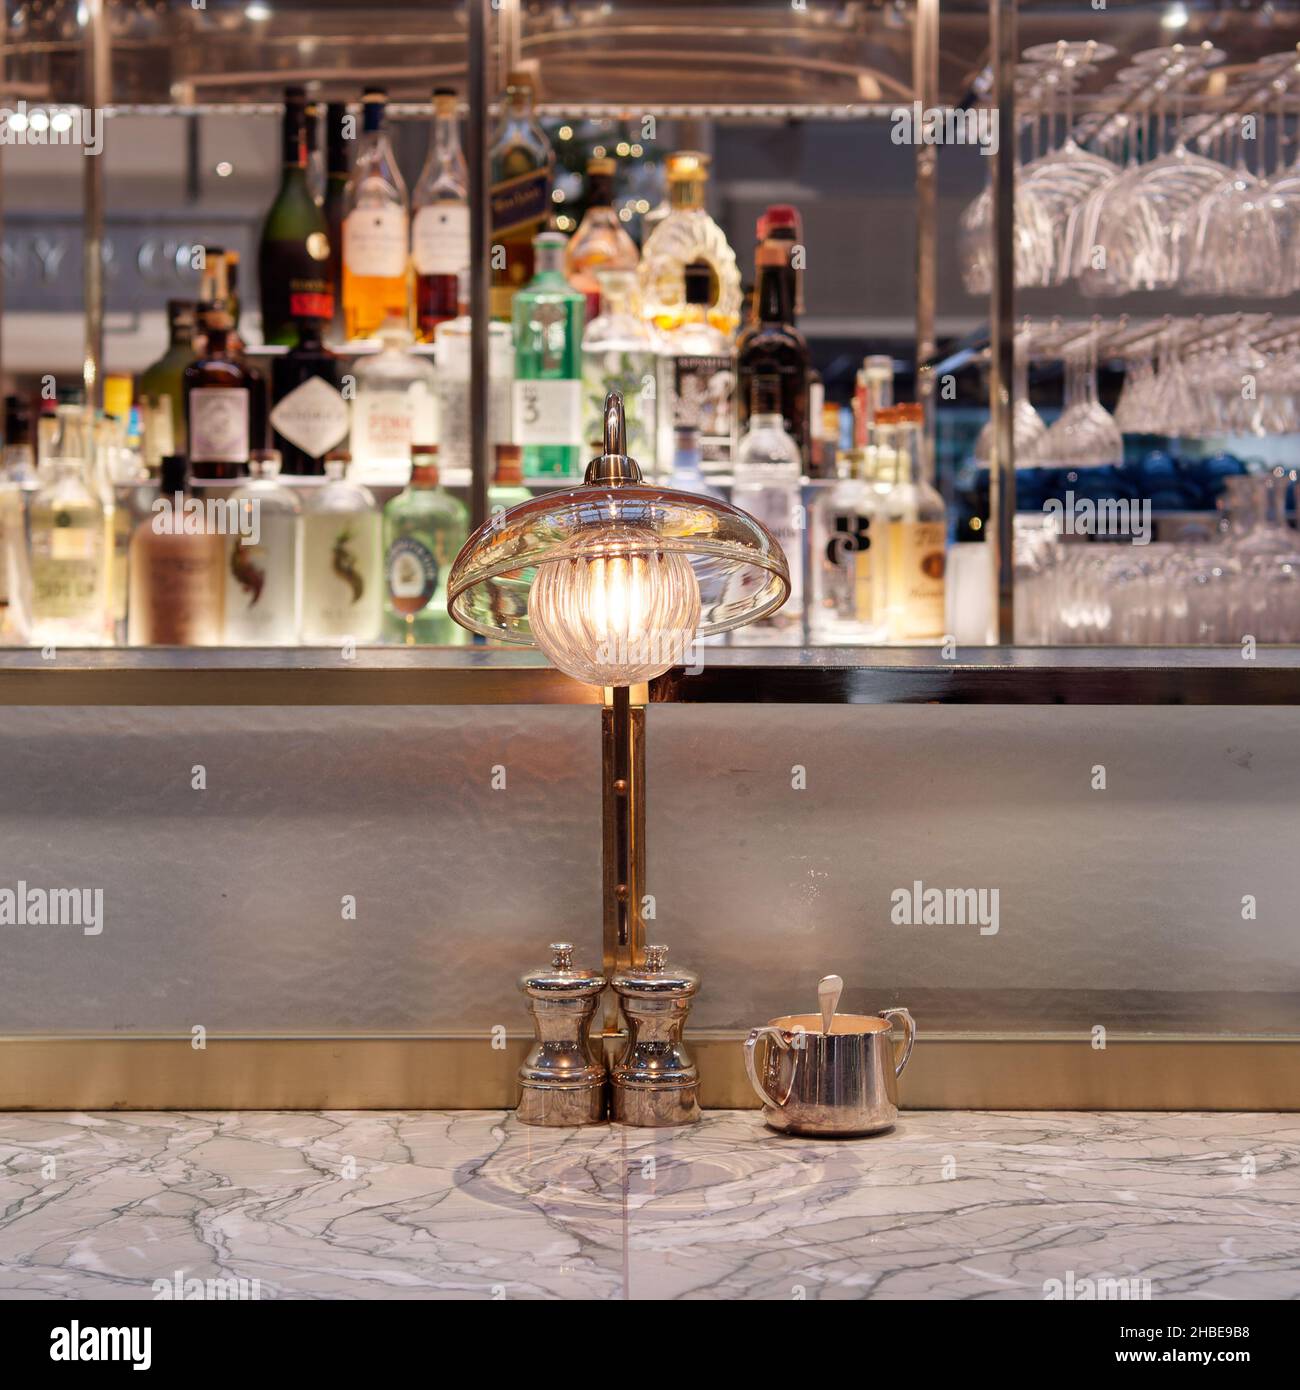 Gros plan d'une lampe sur le bar du bar et restaurant Fortnum and Mason à l'intérieur du Royal Exchange, Londres. Banque D'Images